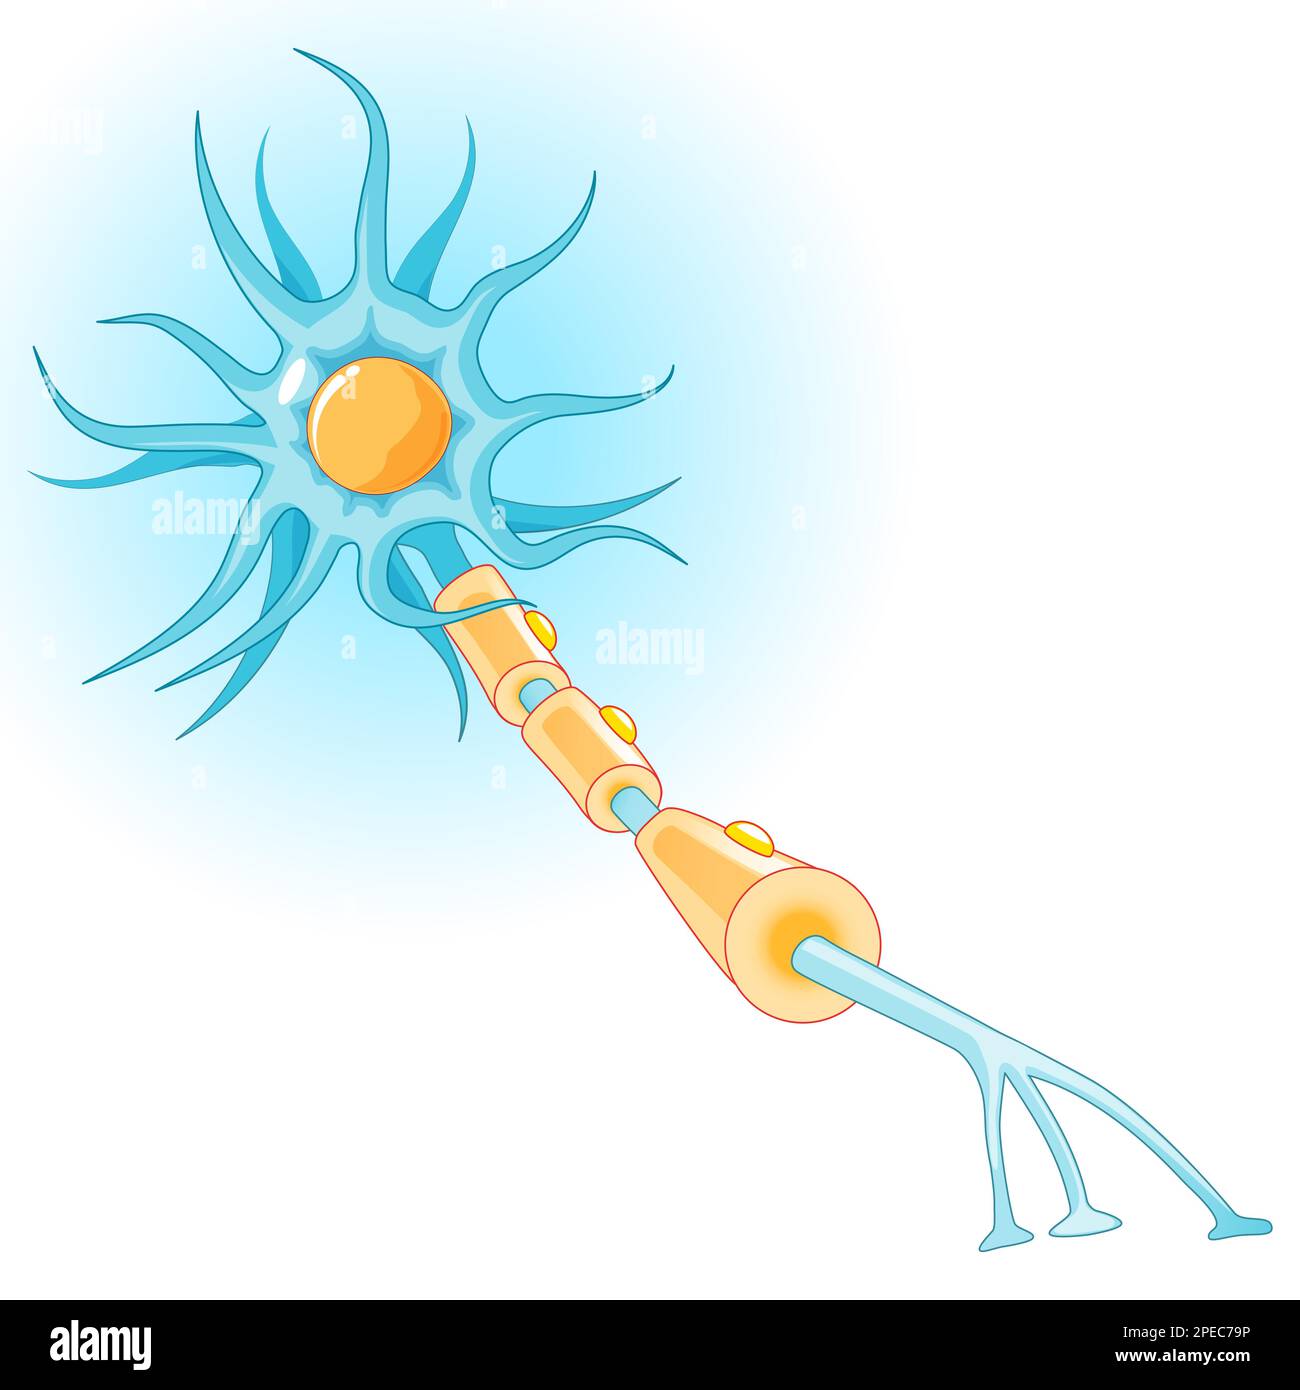 Anatomie d'un neurone typique. Structure des cellules nerveuses : axon, synapse, dendrite, gaine de myéline, cellule de Ranvier et de Schwann. Diagramme vectoriel Illustration de Vecteur